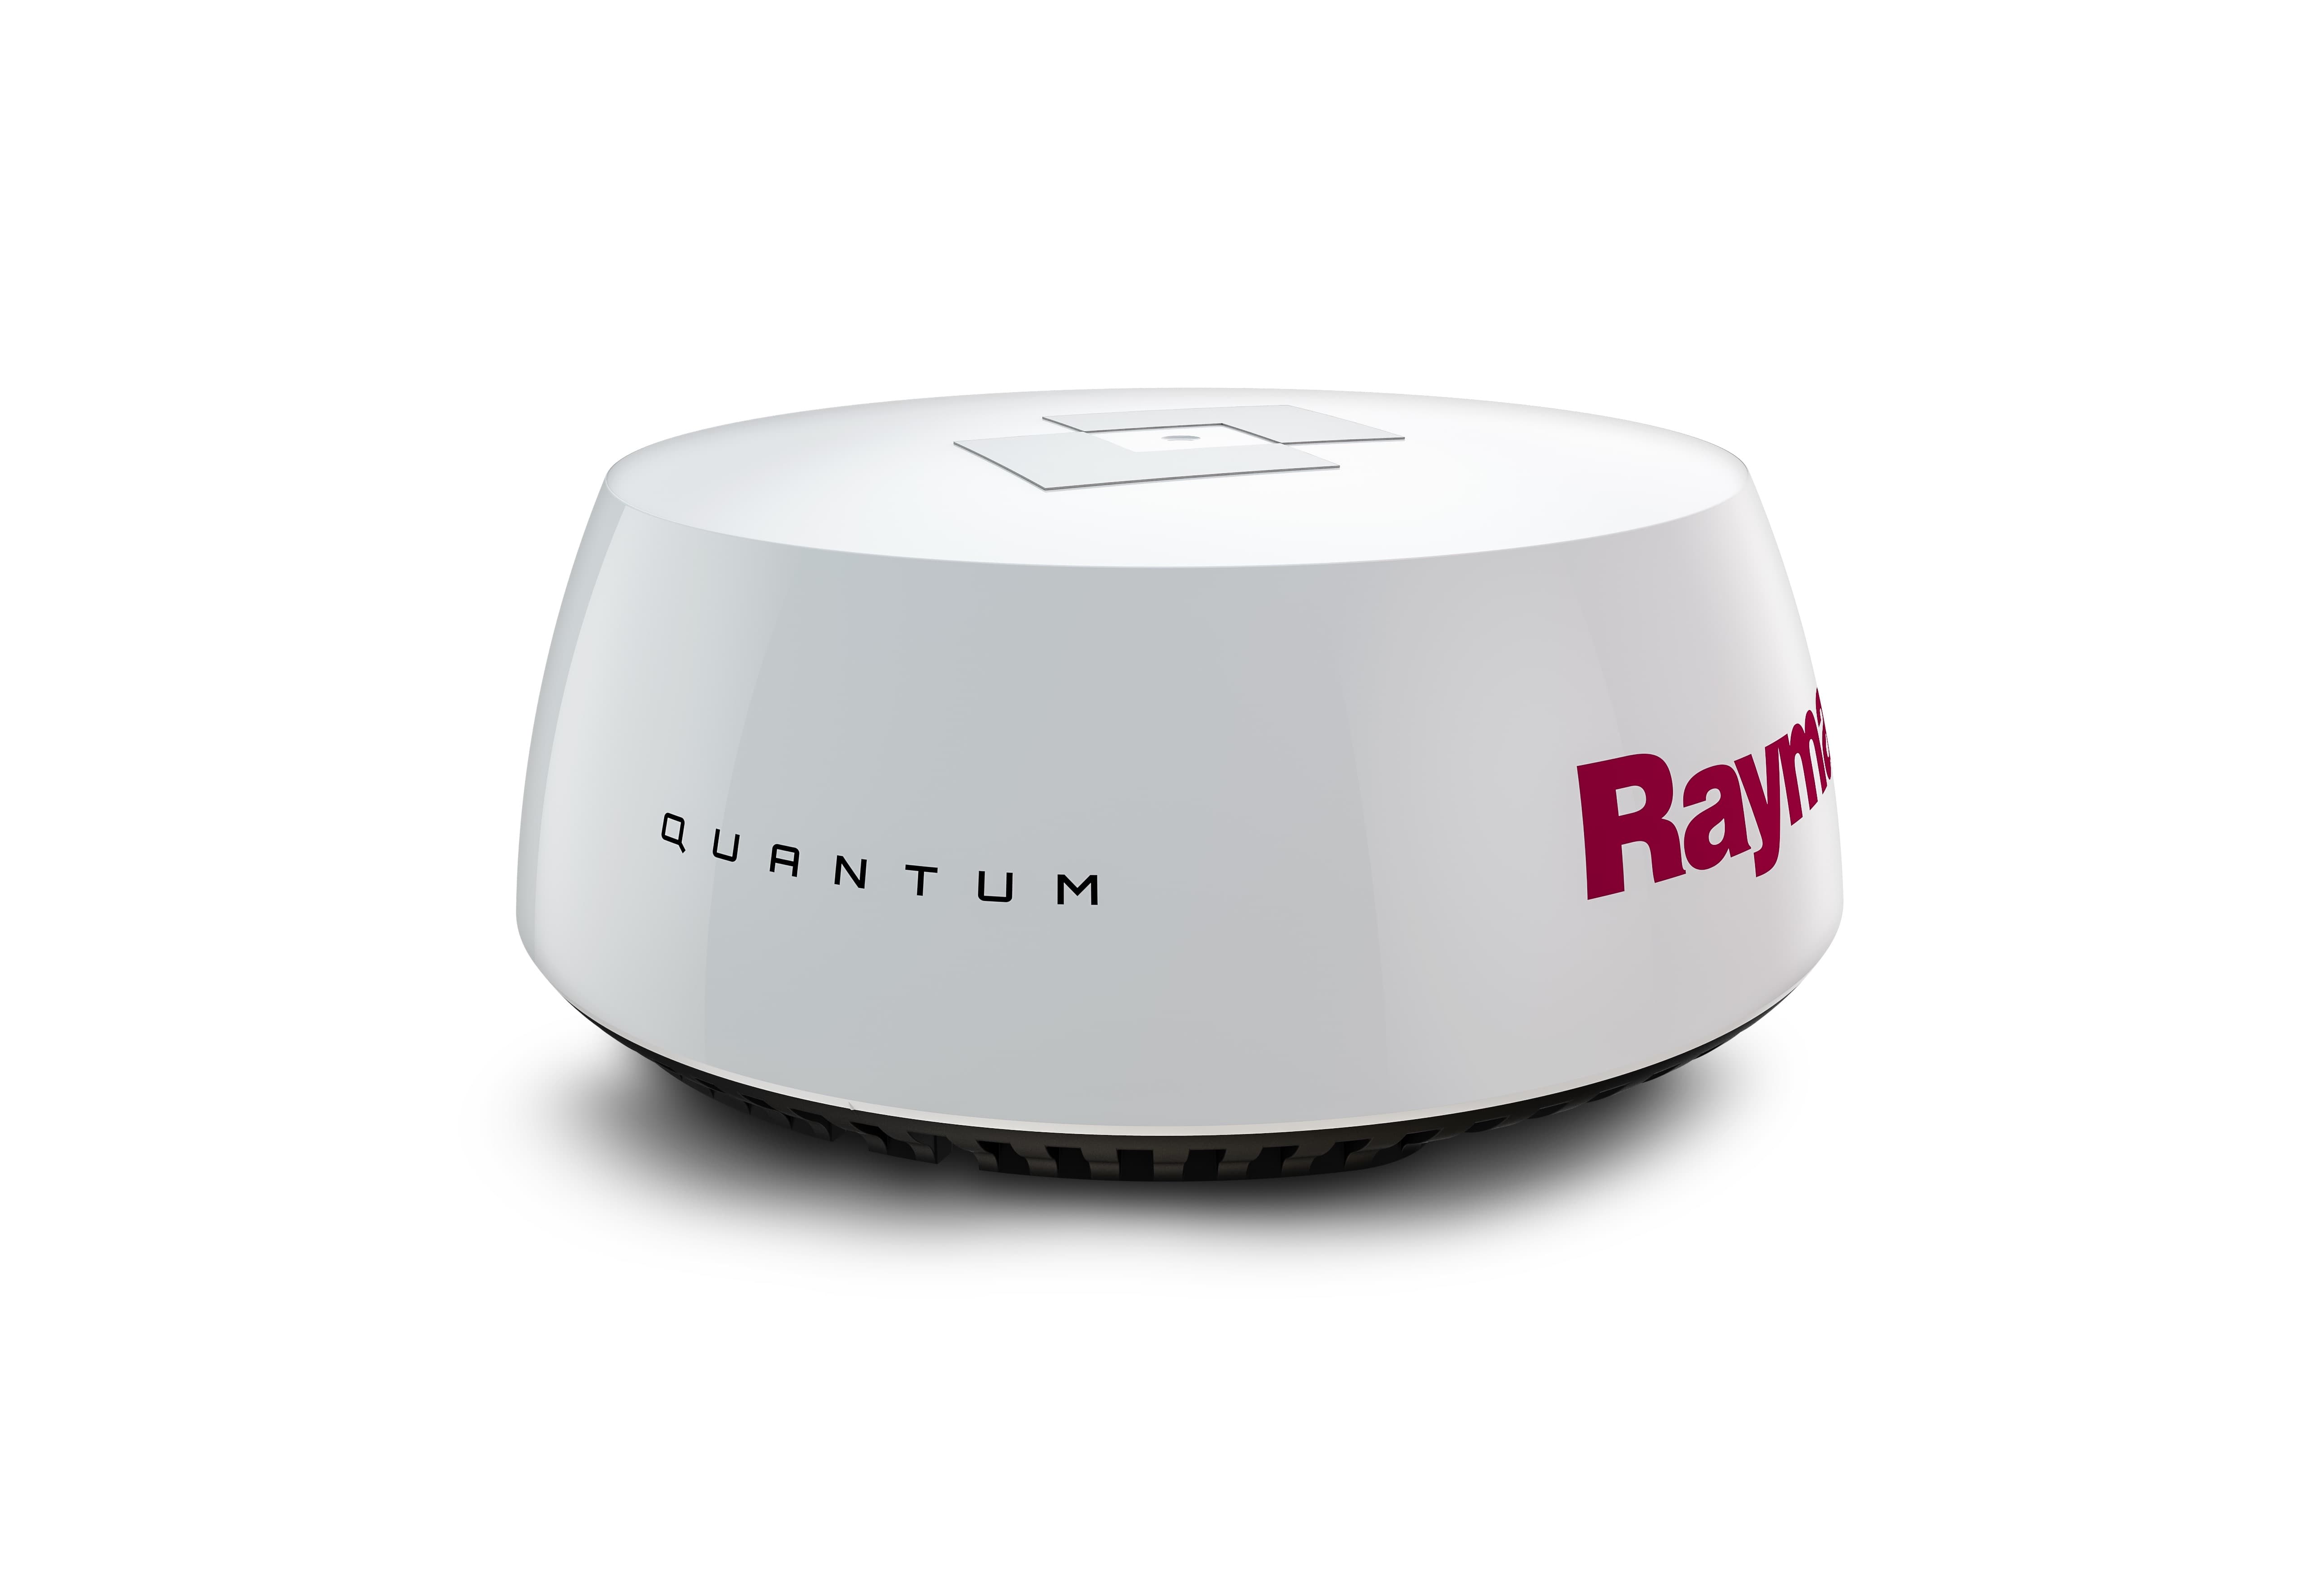 Neue Radarantenne: Raymarine Quantum